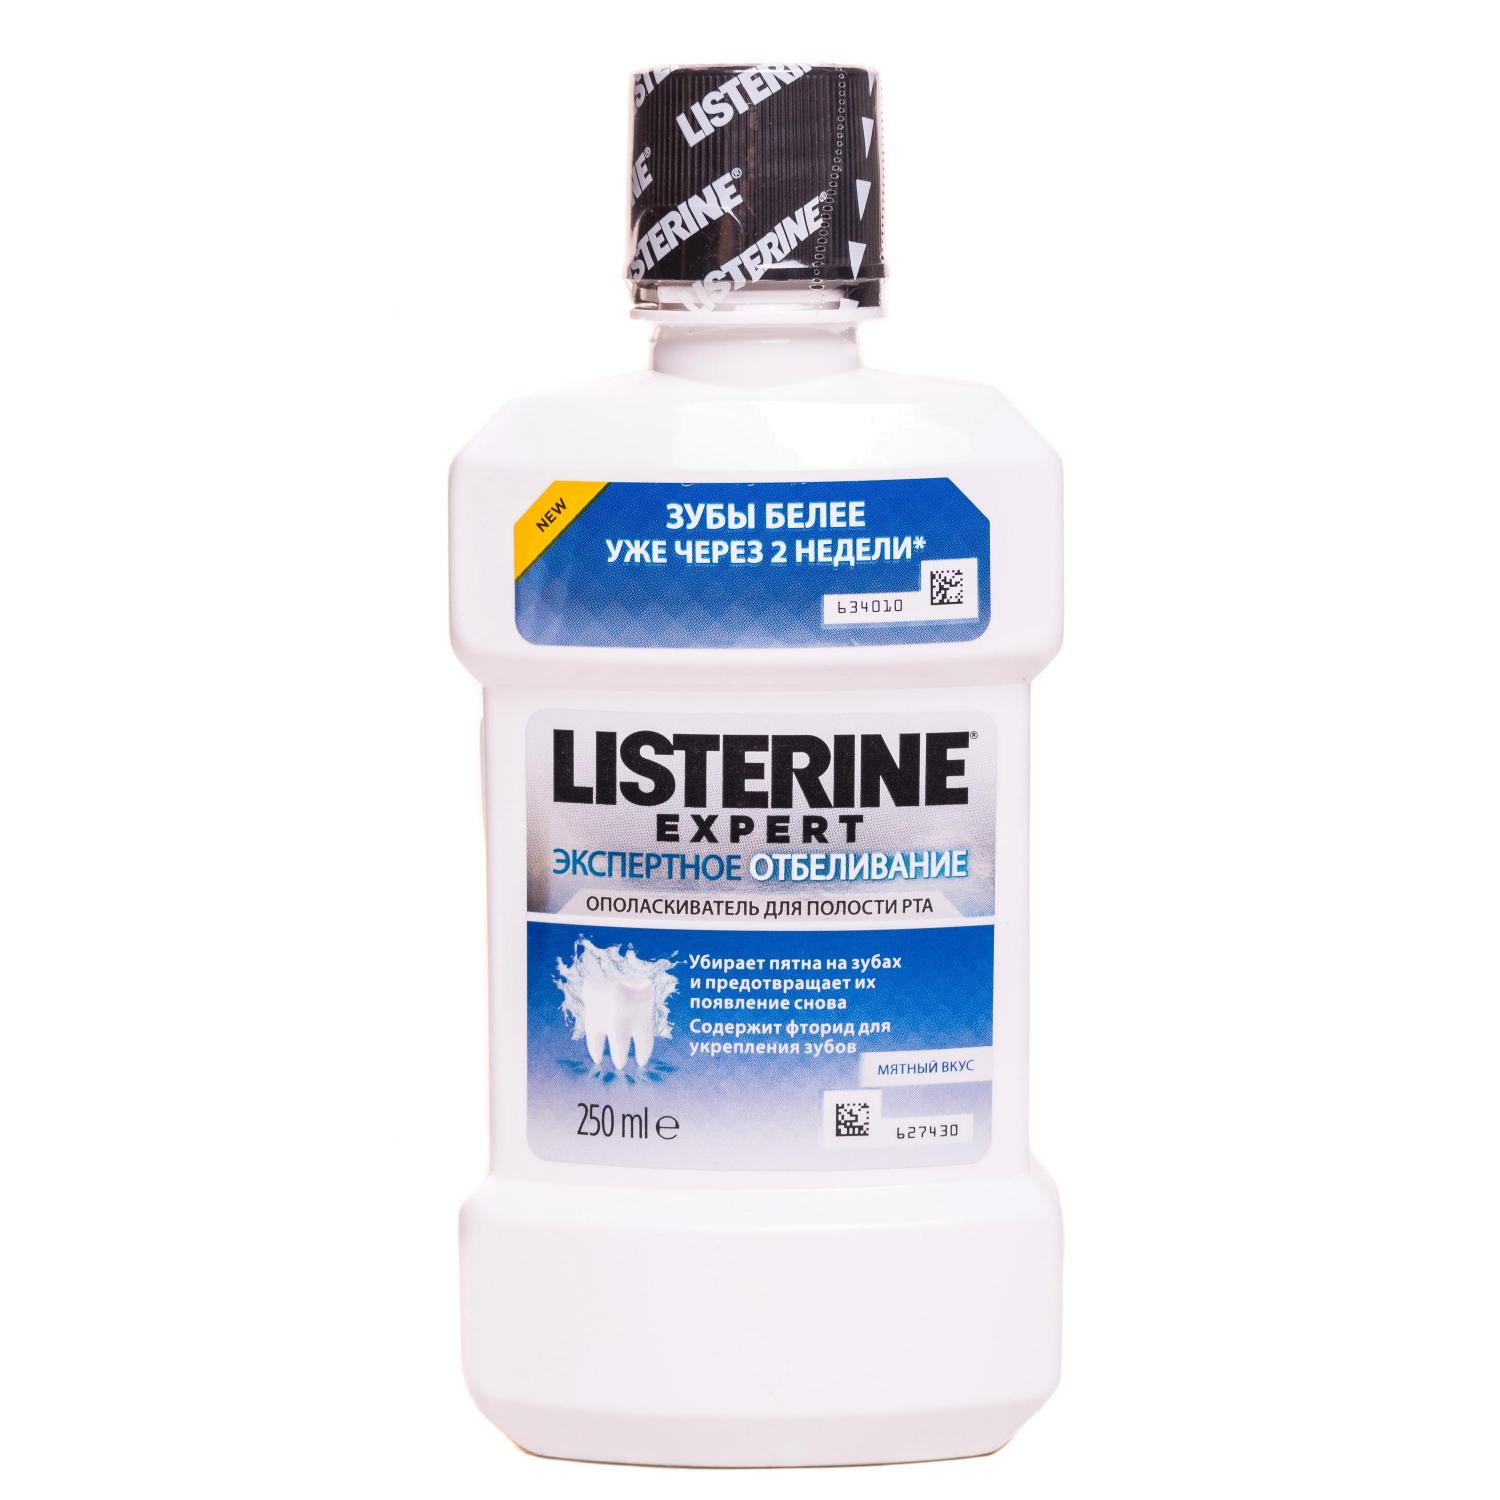 Ополаскиватель для рта Listerine Expert экспертное отбеливание